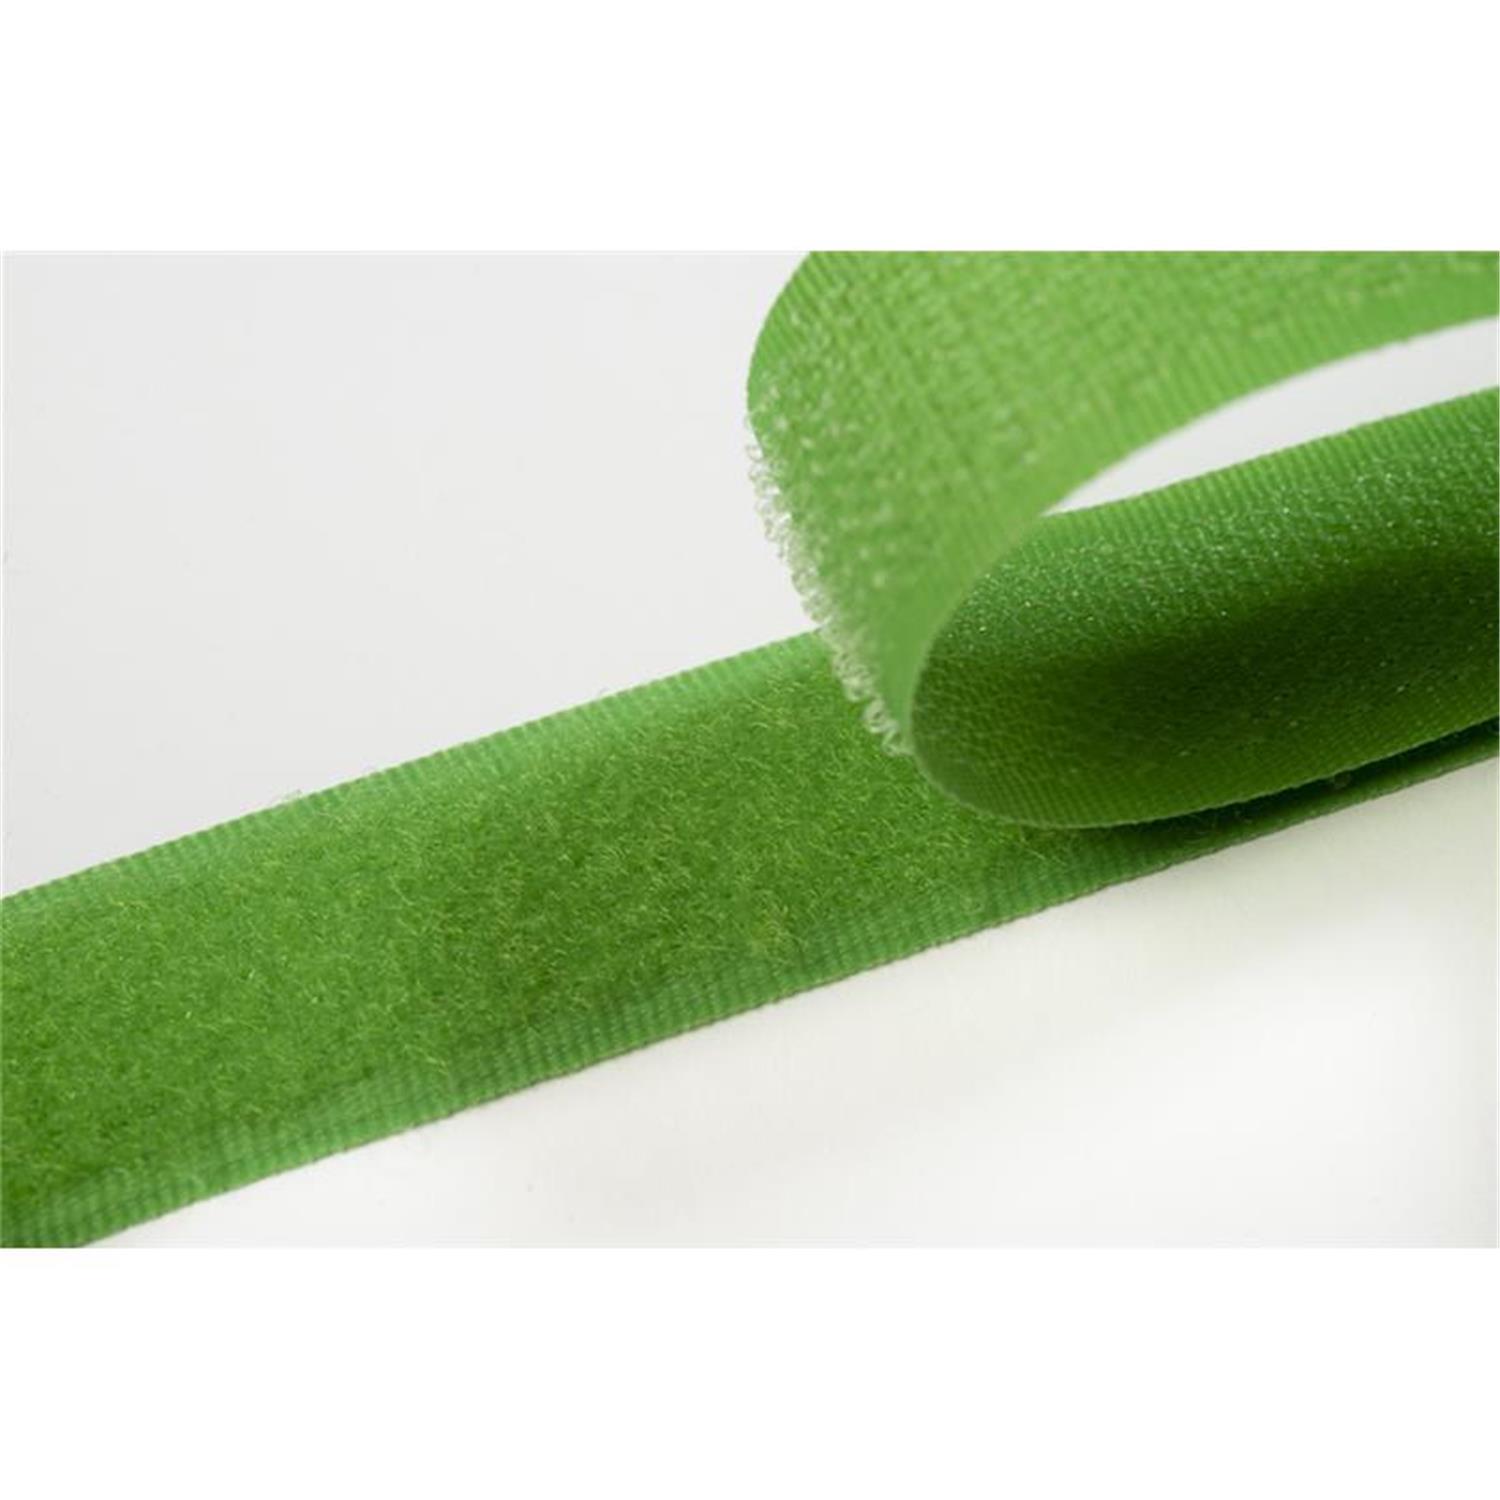 Klettband zum aufnähen, 50 mm, frühlingsgrün #08 25 Meter